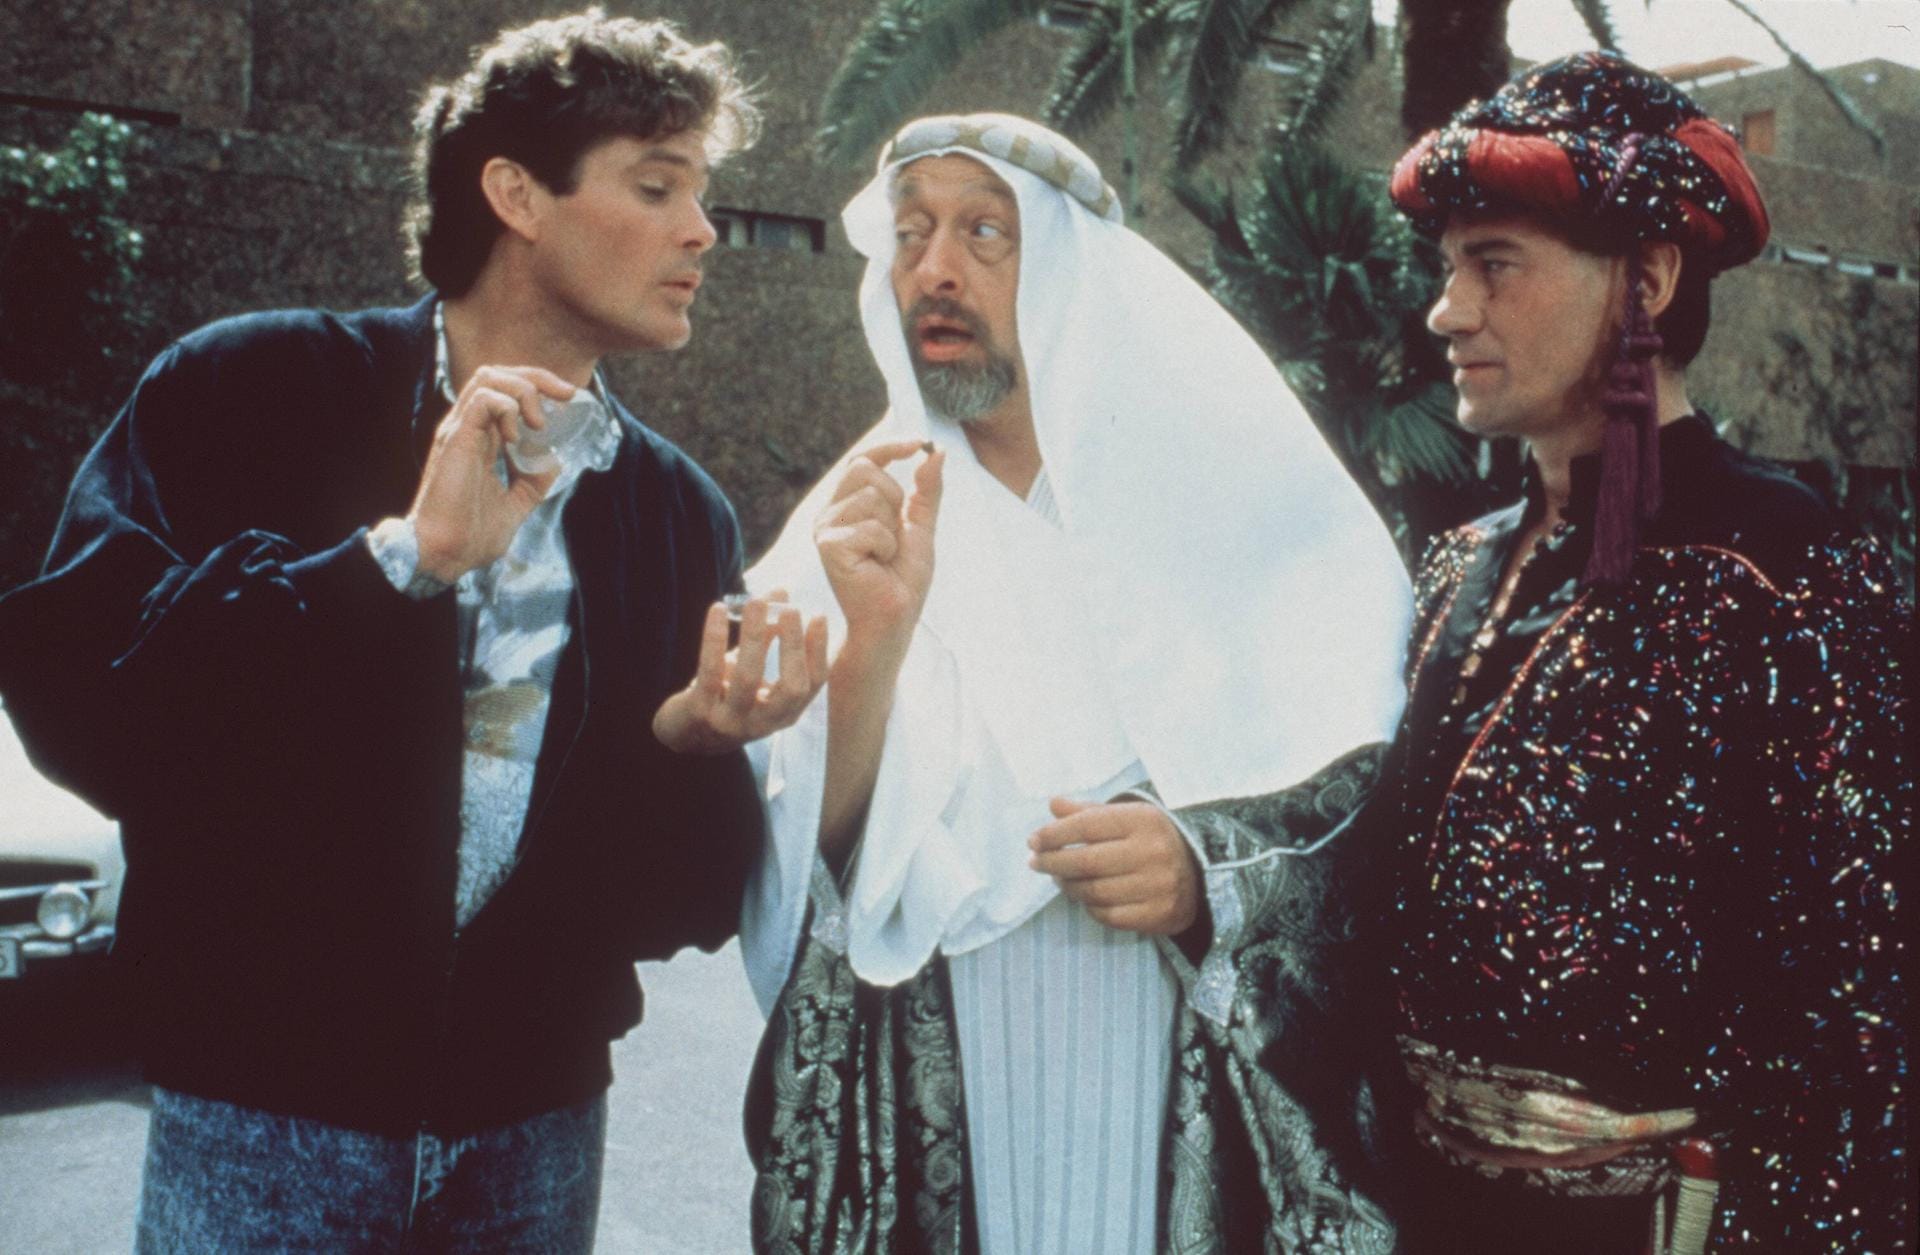 1988 spielt Karl Dall unter anderem neben David Hasselhoff in "Starke Zeiten" mit.